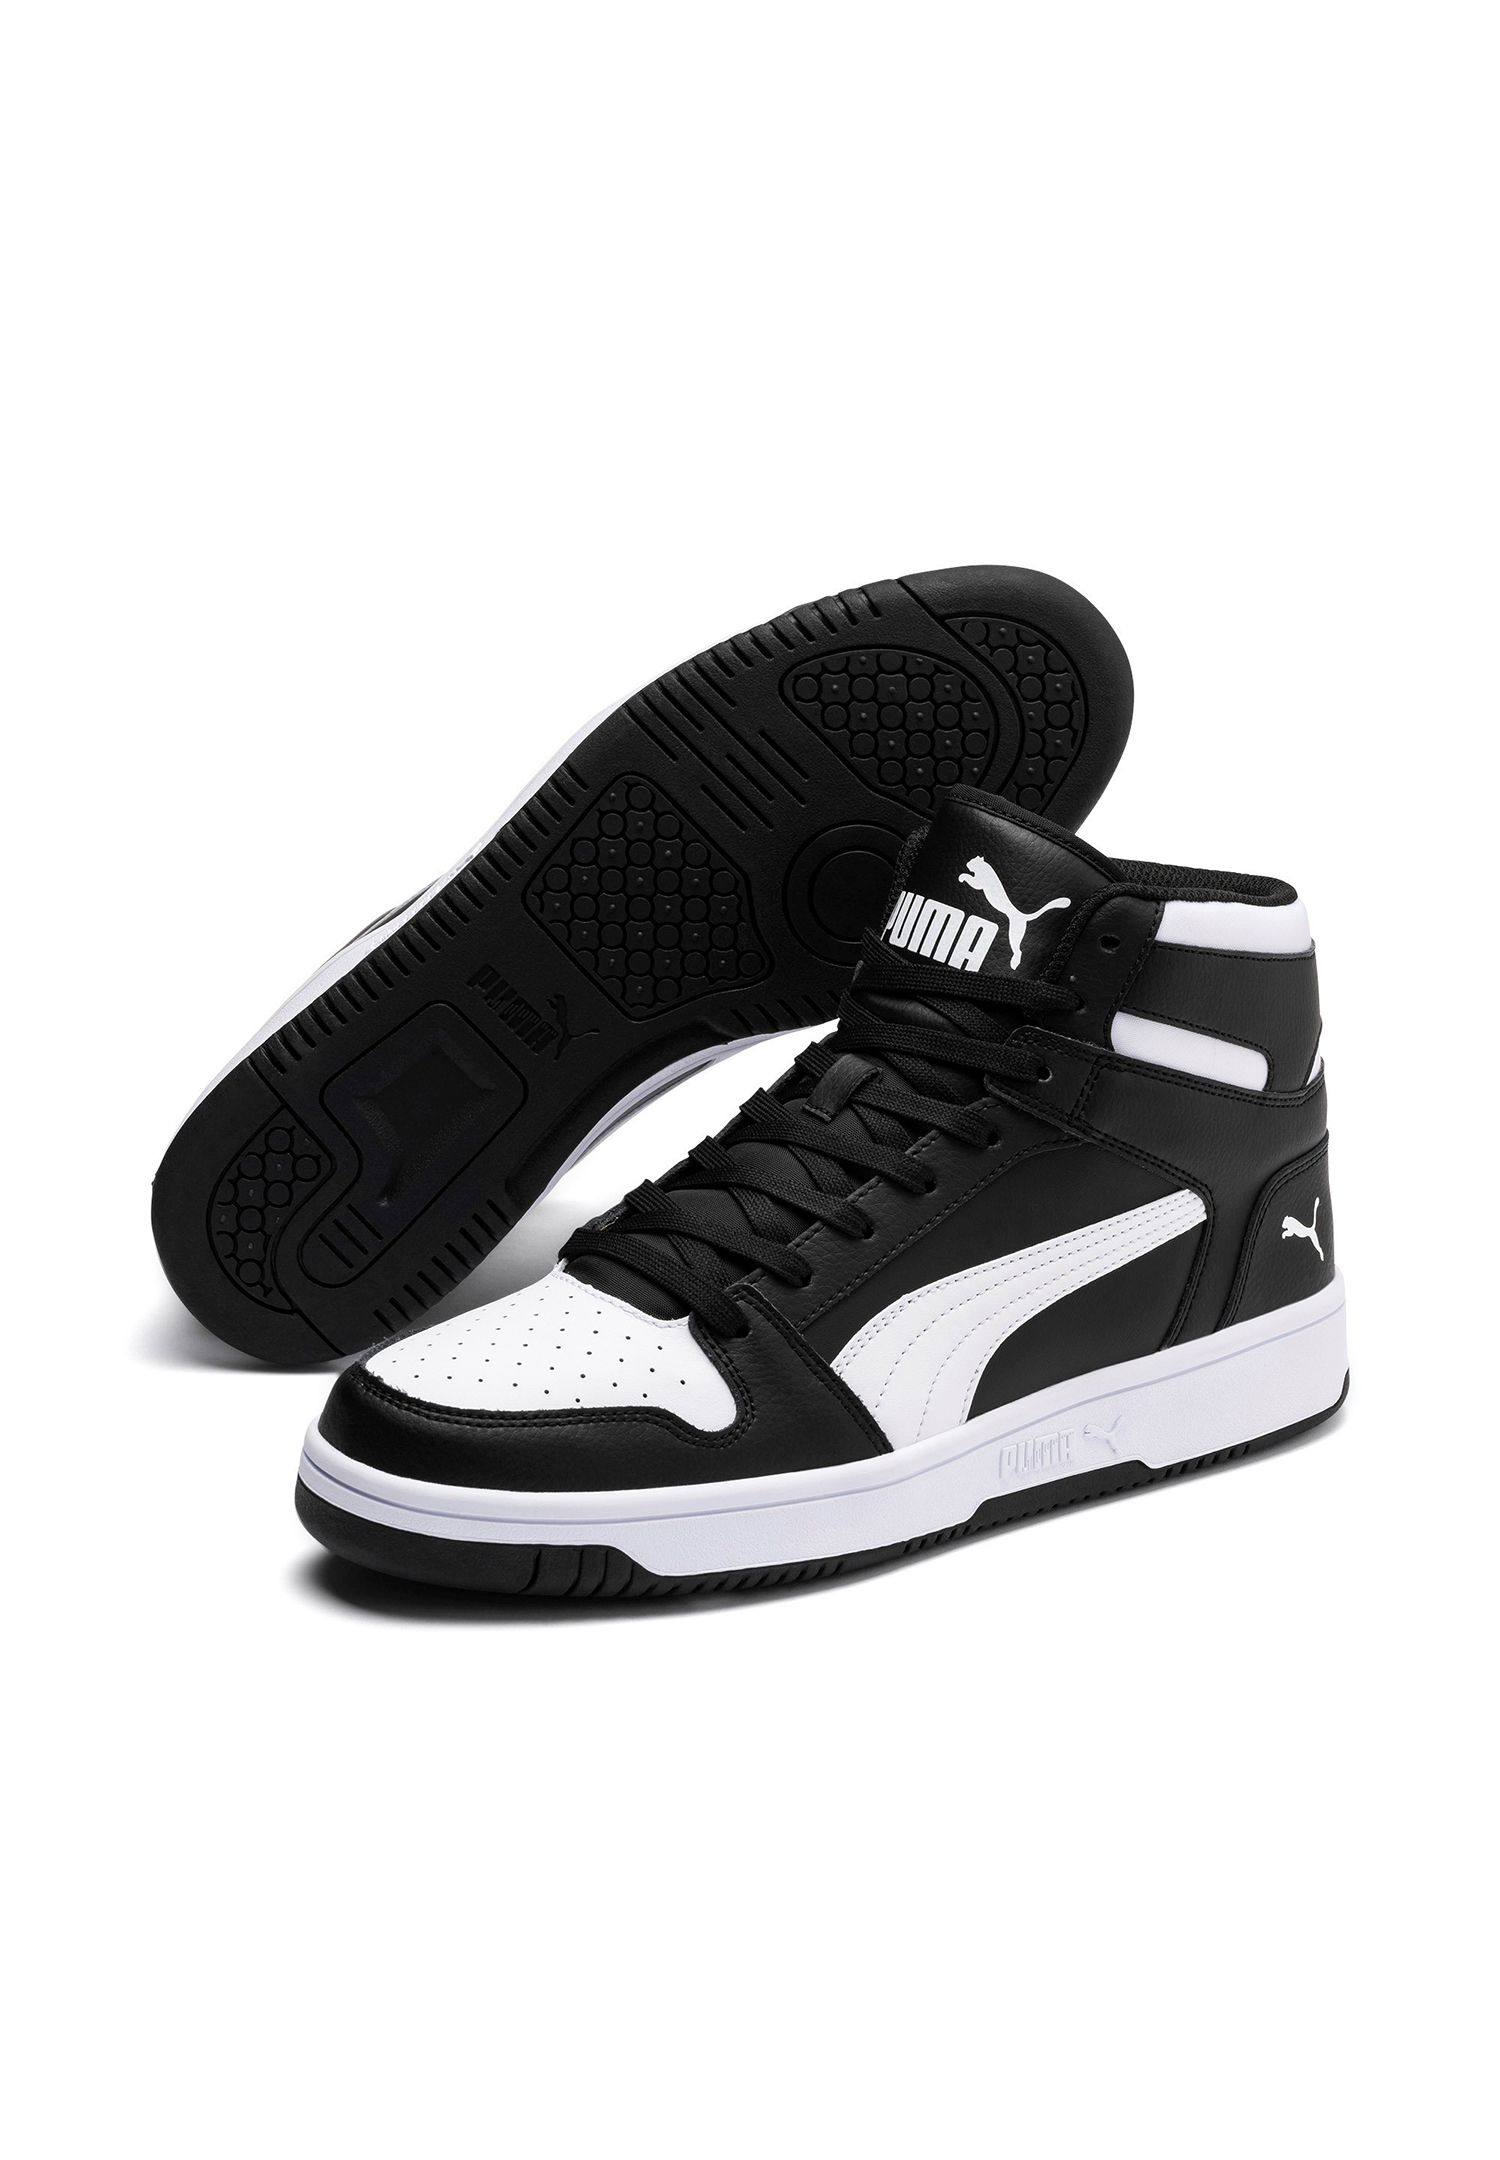 Puma Rebound LayUp SL Hoher Sneaker Stiefel Boots Herren Sneaker 369573 von Puma